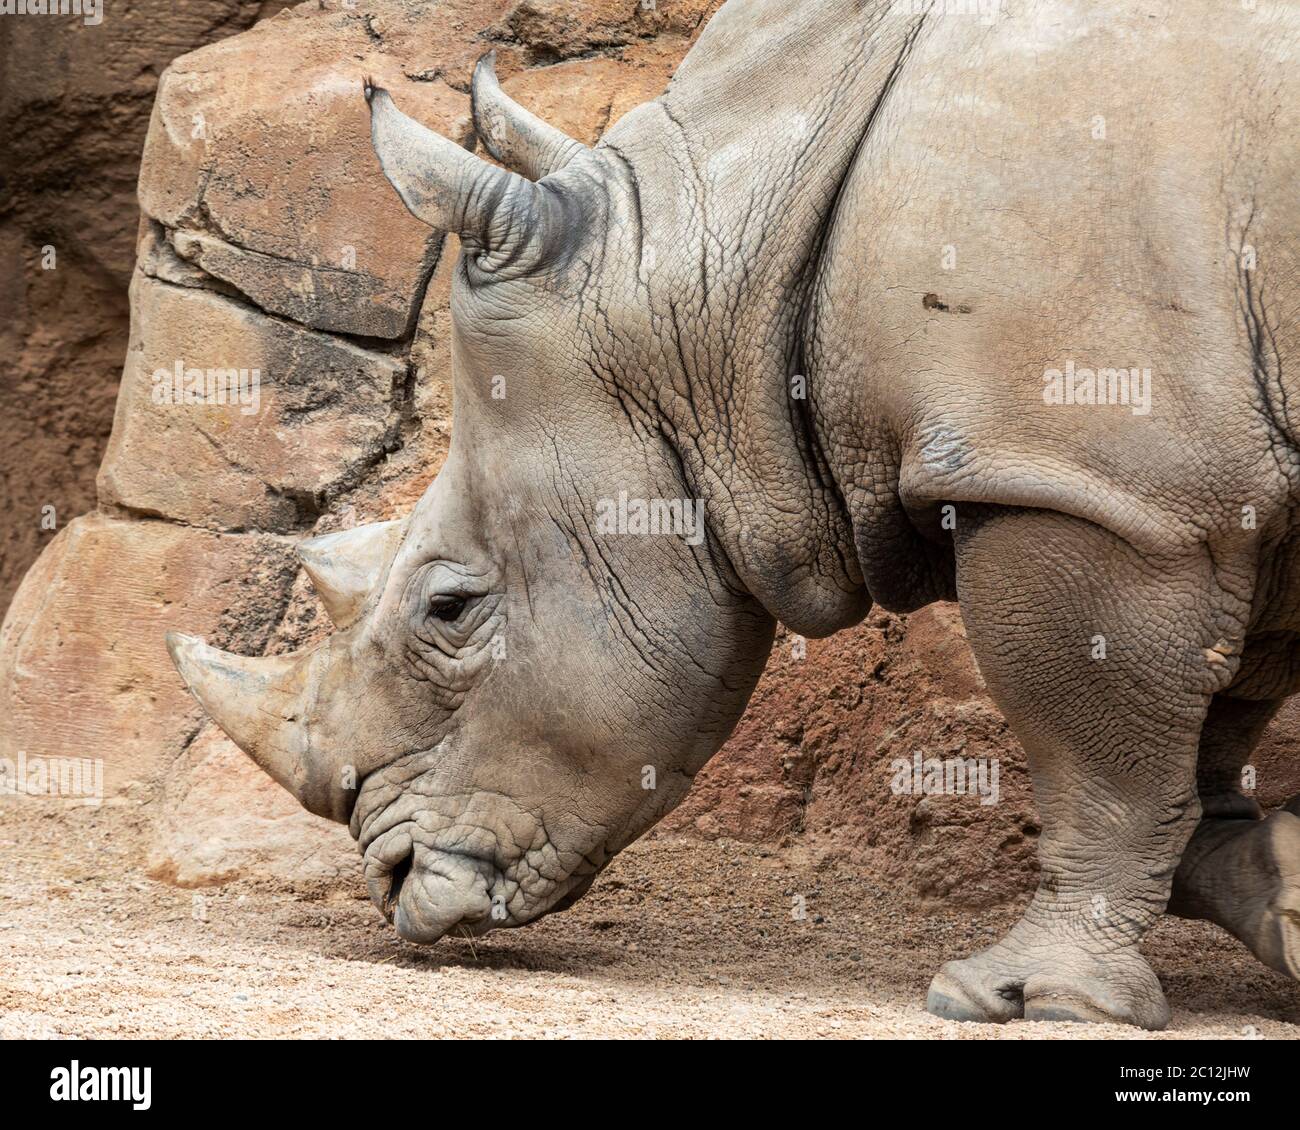 Tête de rhinocéros blanc du sud (Ceratotherium simum), Bioparc, Valence, Espagne. Banque D'Images